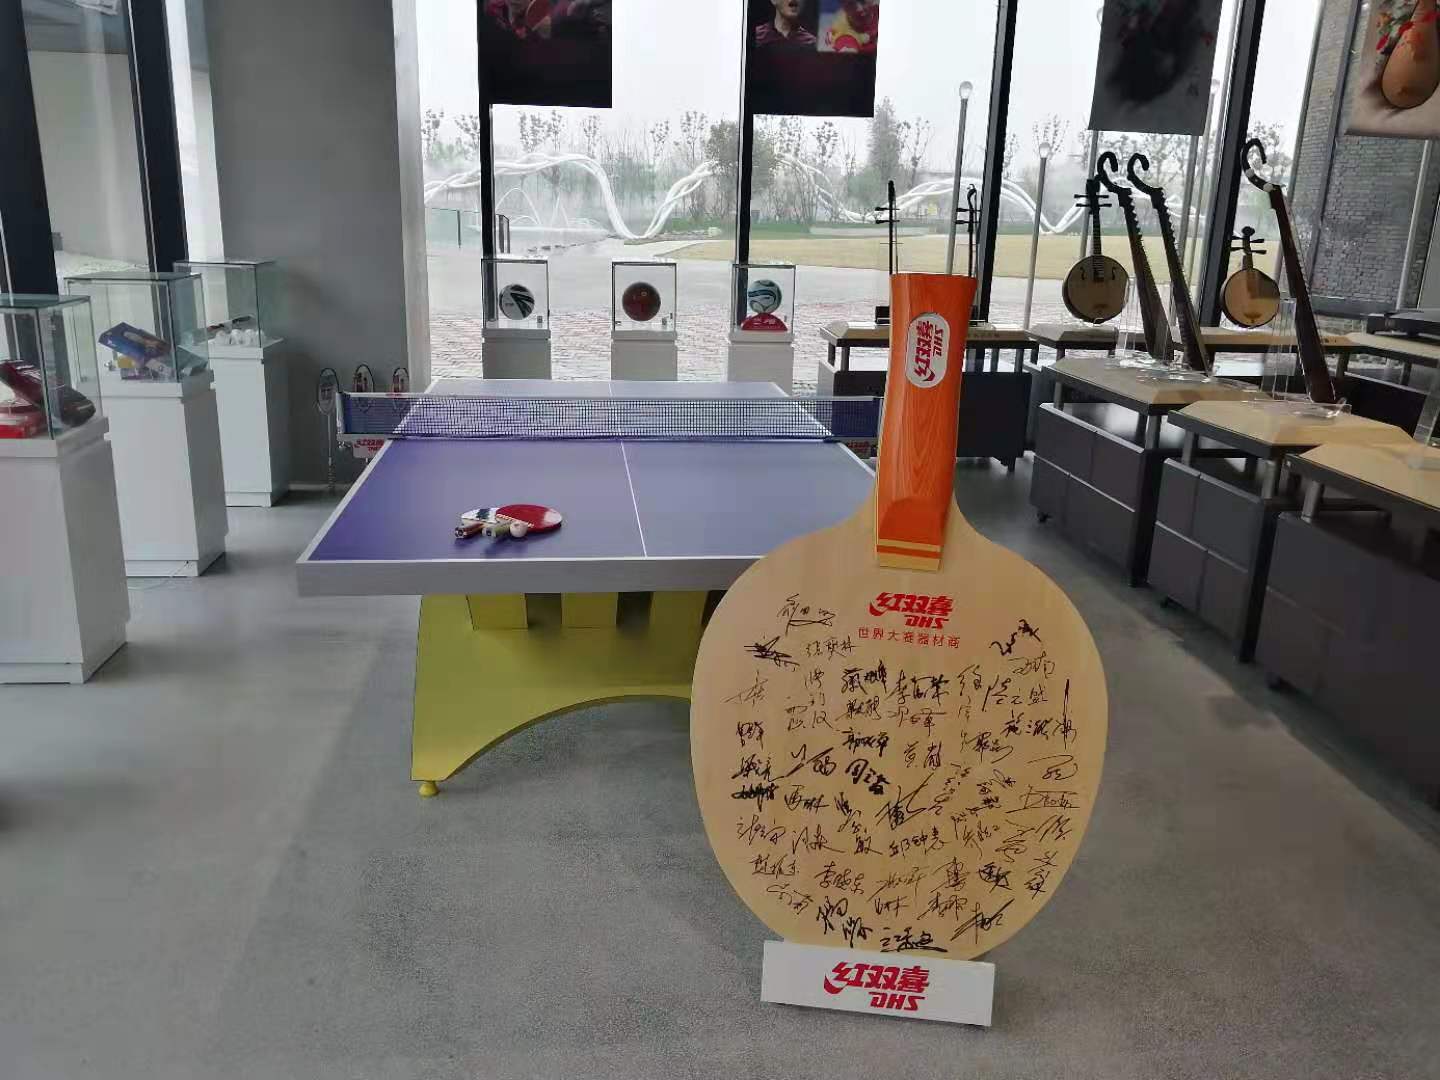 红双喜乒乓球包 上海品牌中国质造10月1日在举国同庆